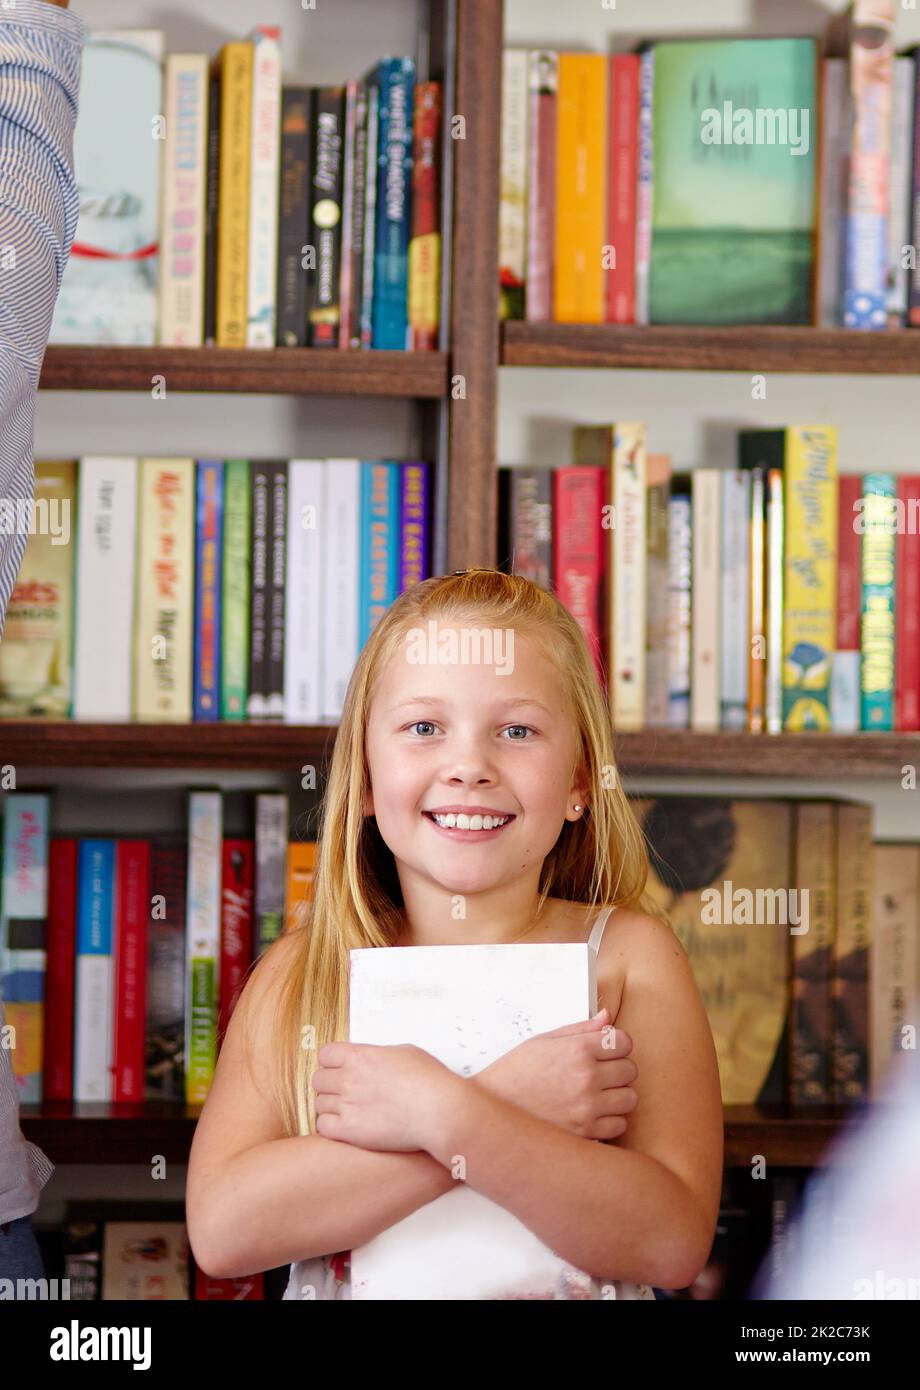 Mi piacciono i libri. Una ragazza giovane carina che aggrappa il suo libro in una biblioteca. Foto Stock